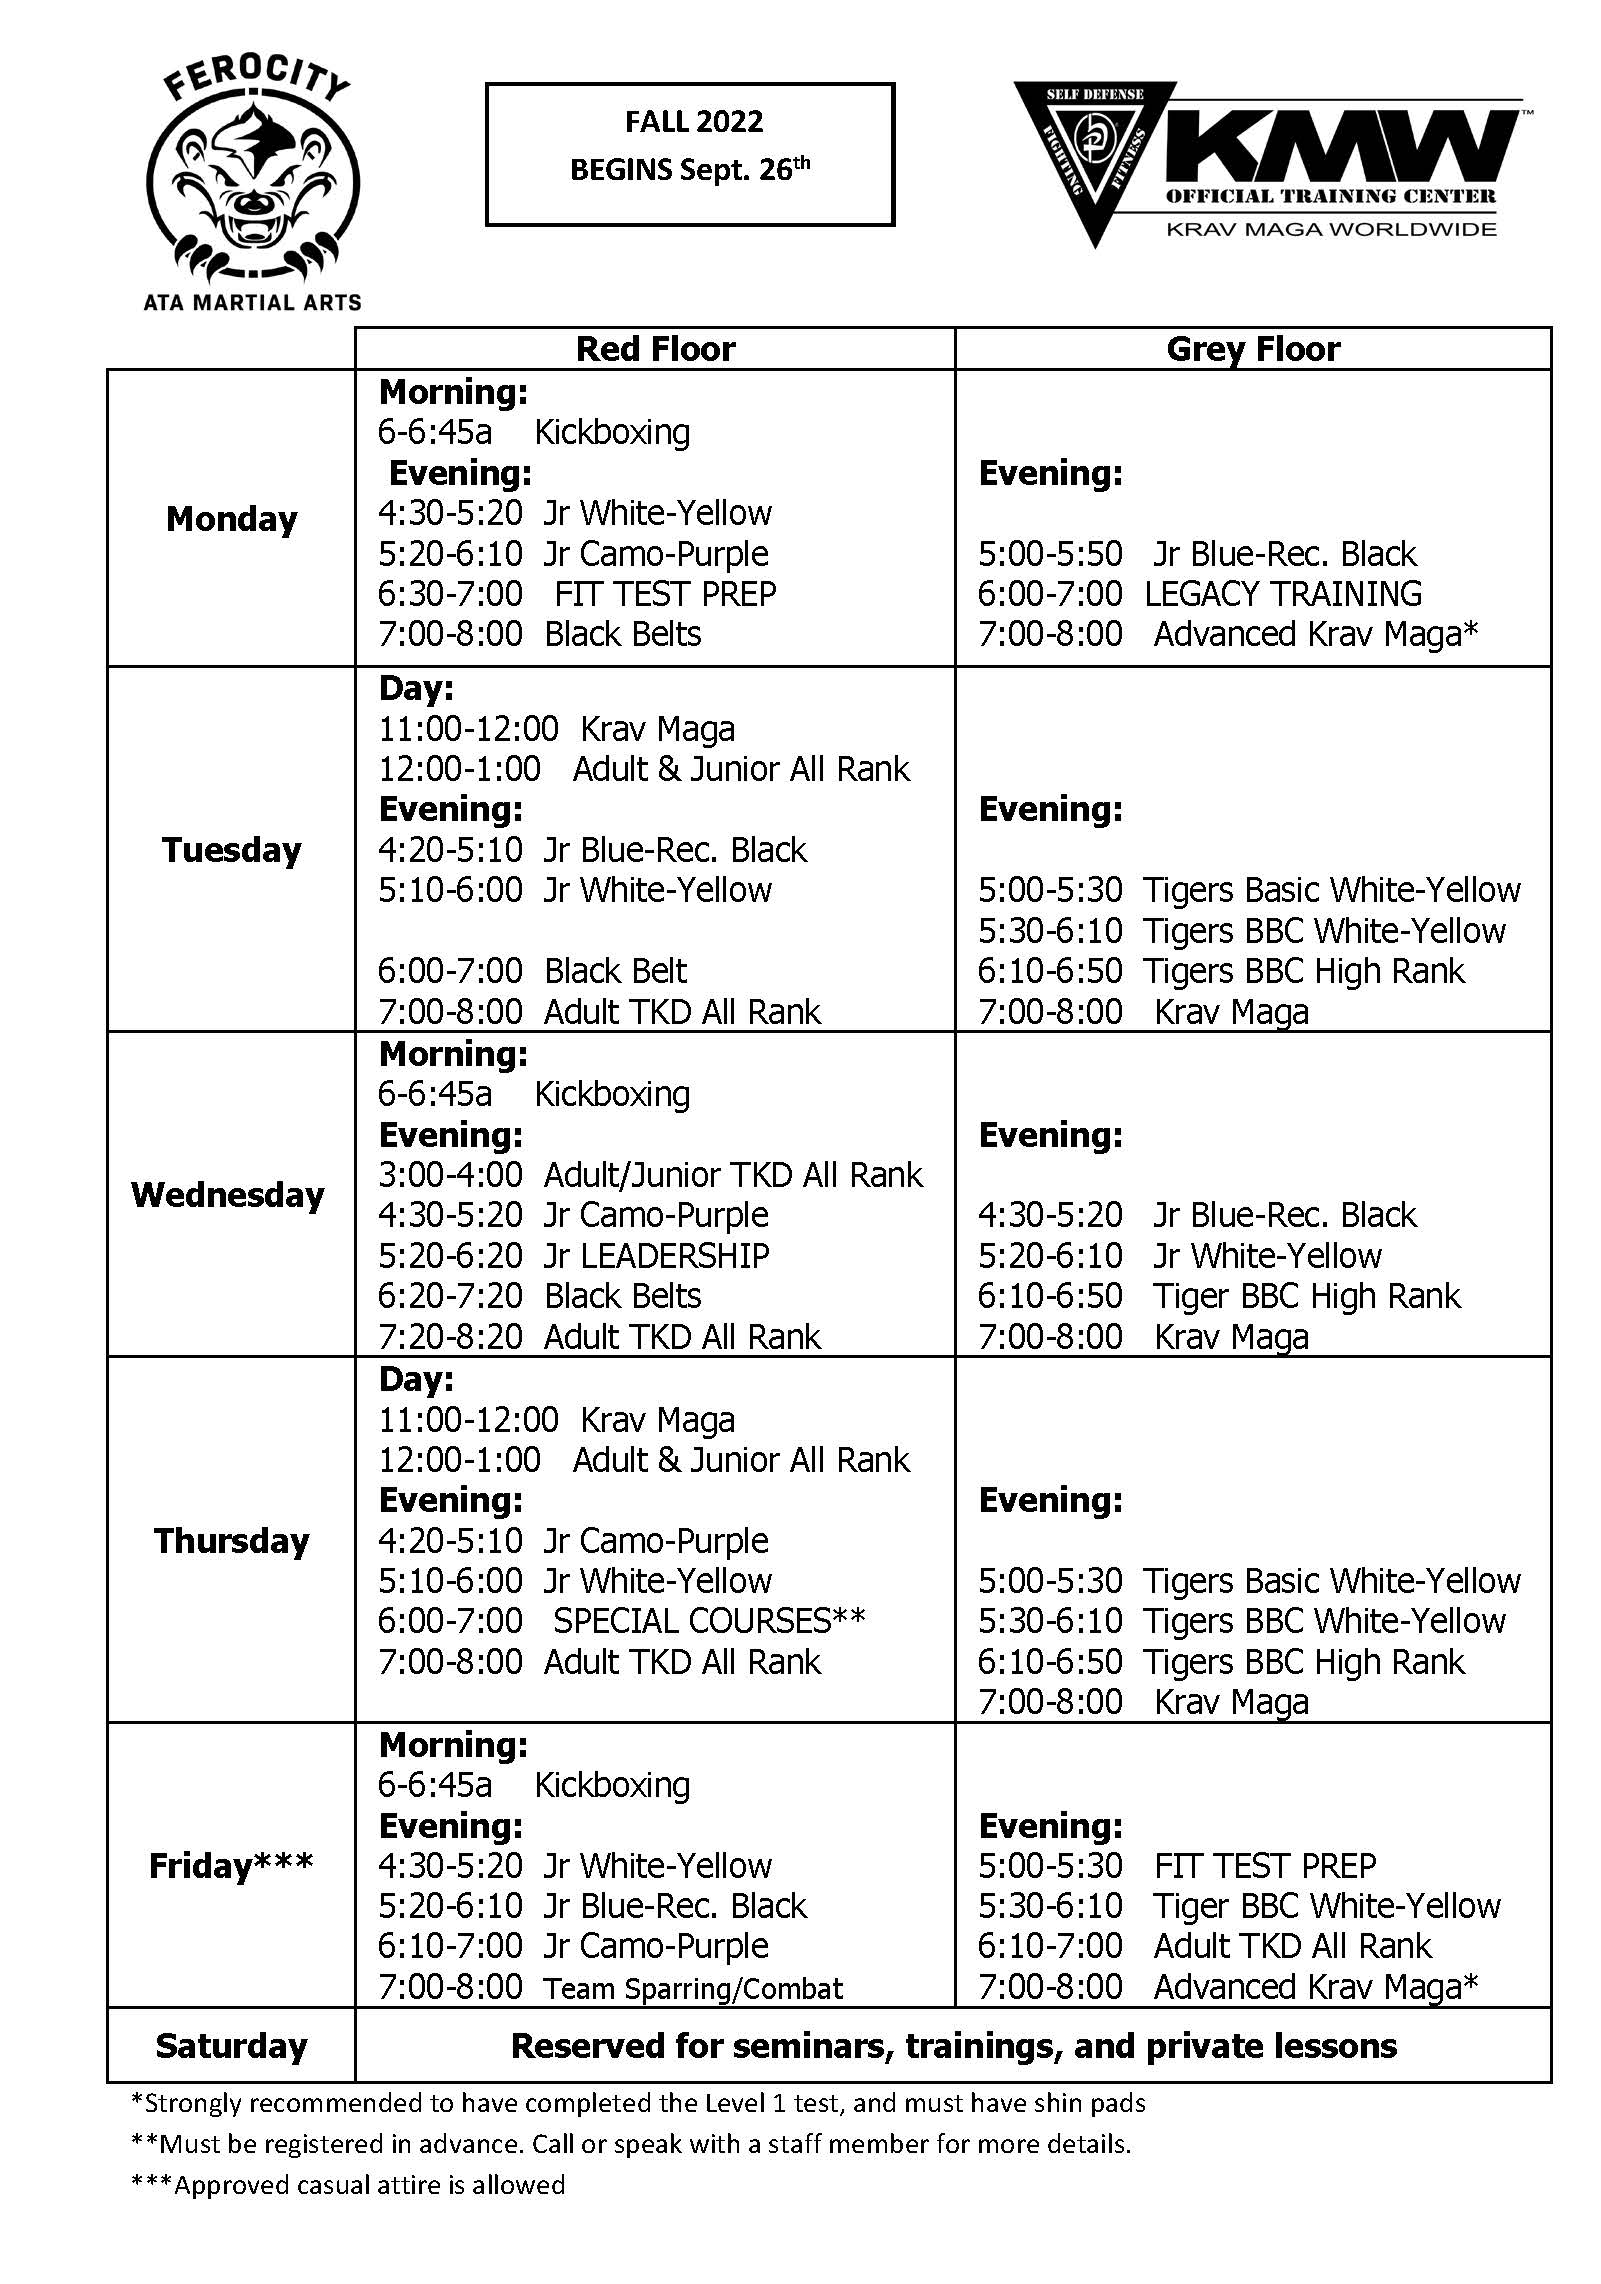 Ferocity ATA Martial Arts Schedule & Events Idaho Falls, ID